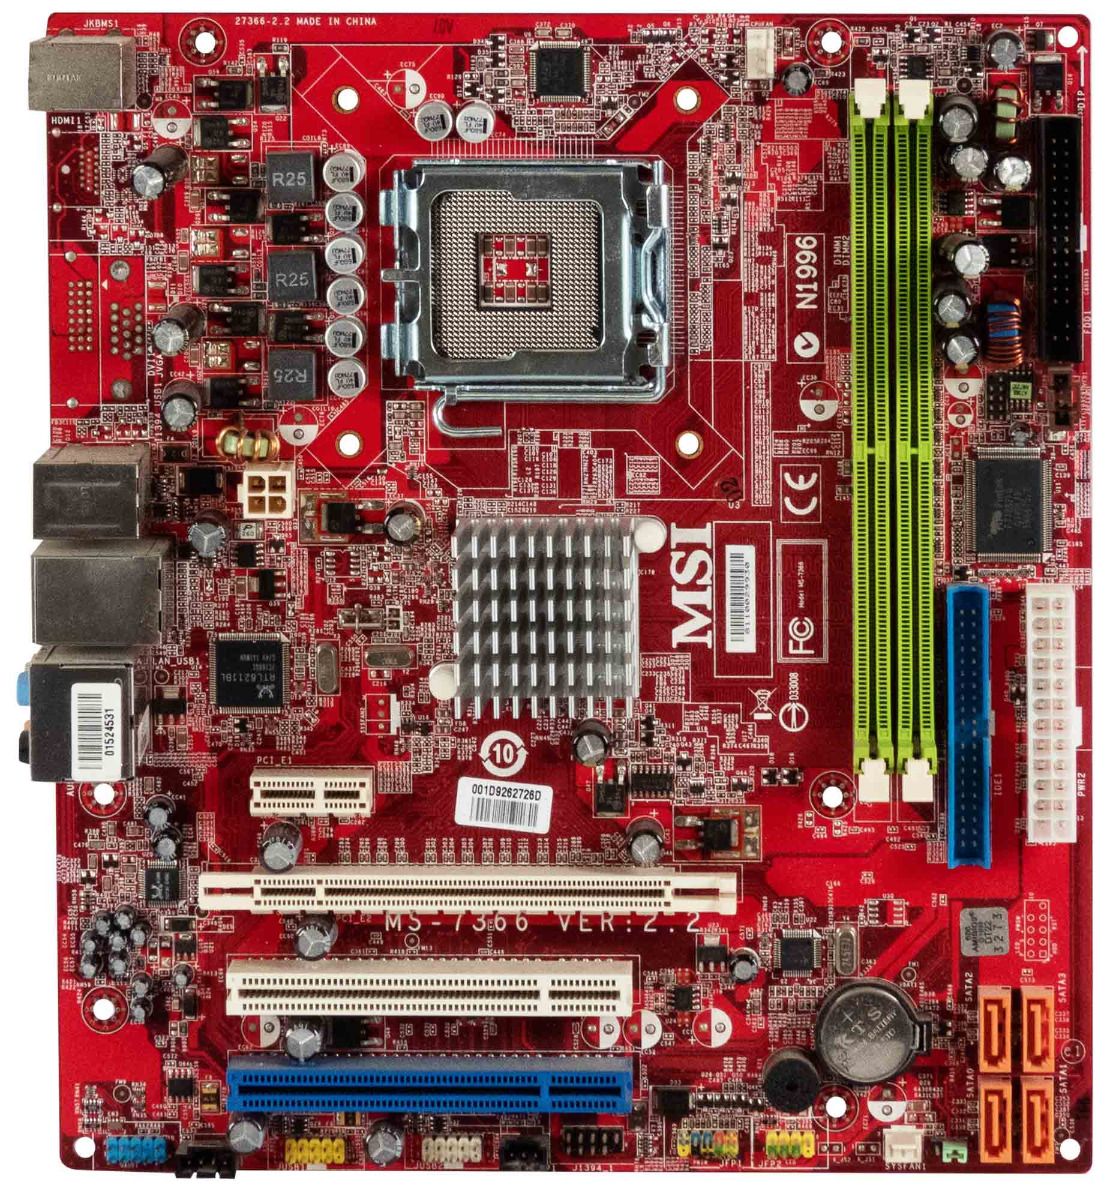  MSI MS-7366 VER: 2.2 s.775 DDR2 PCI PCIe mATX